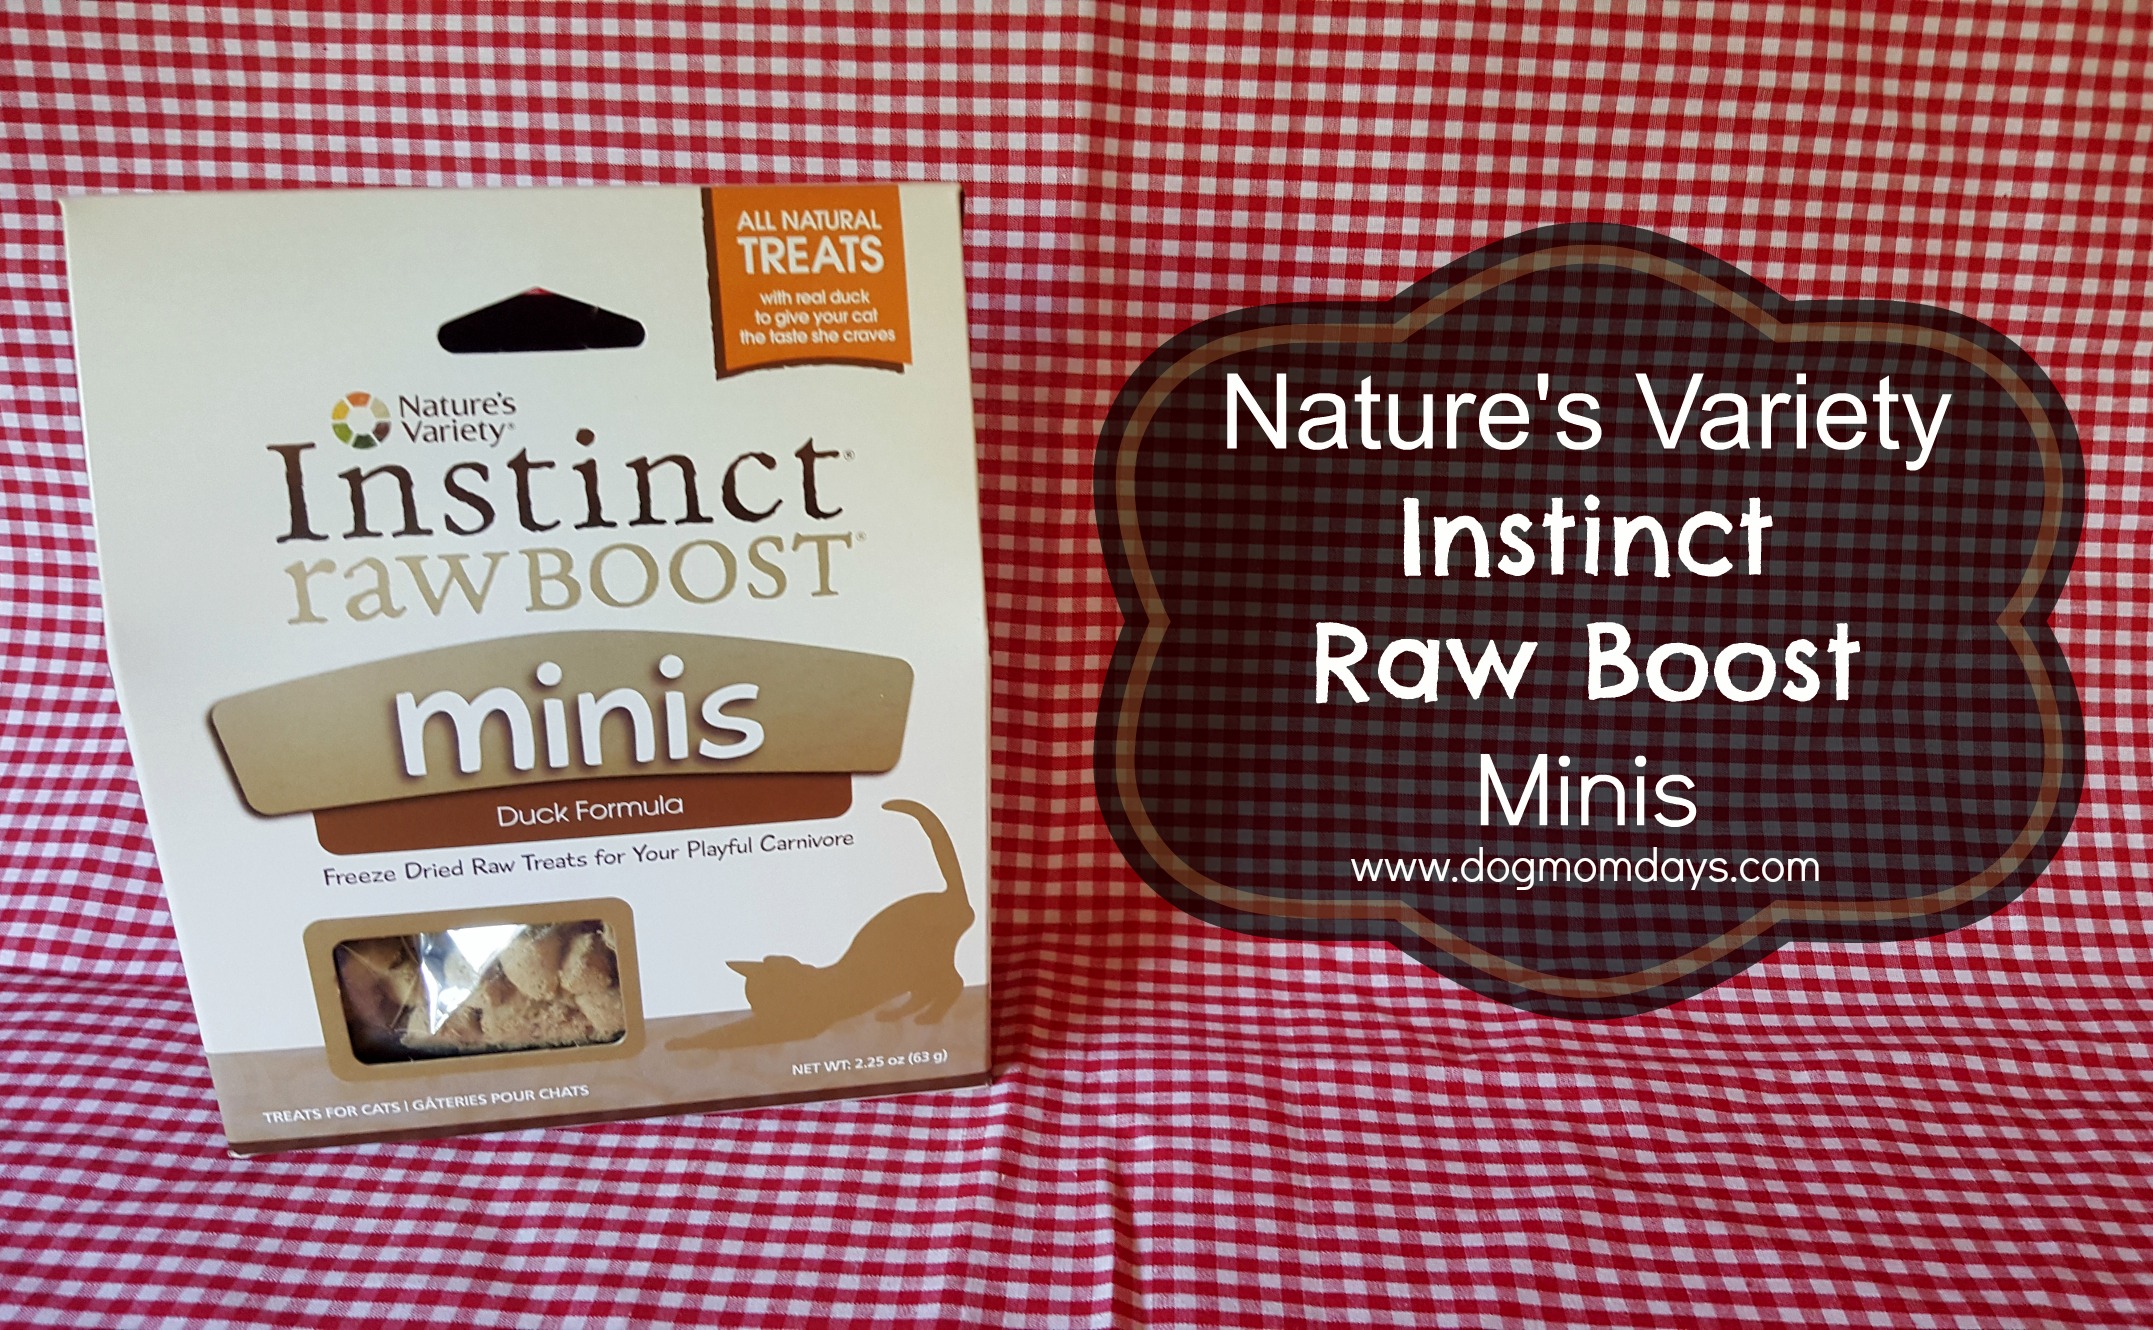 Nature's Variety Instinct Raw Boost Minis